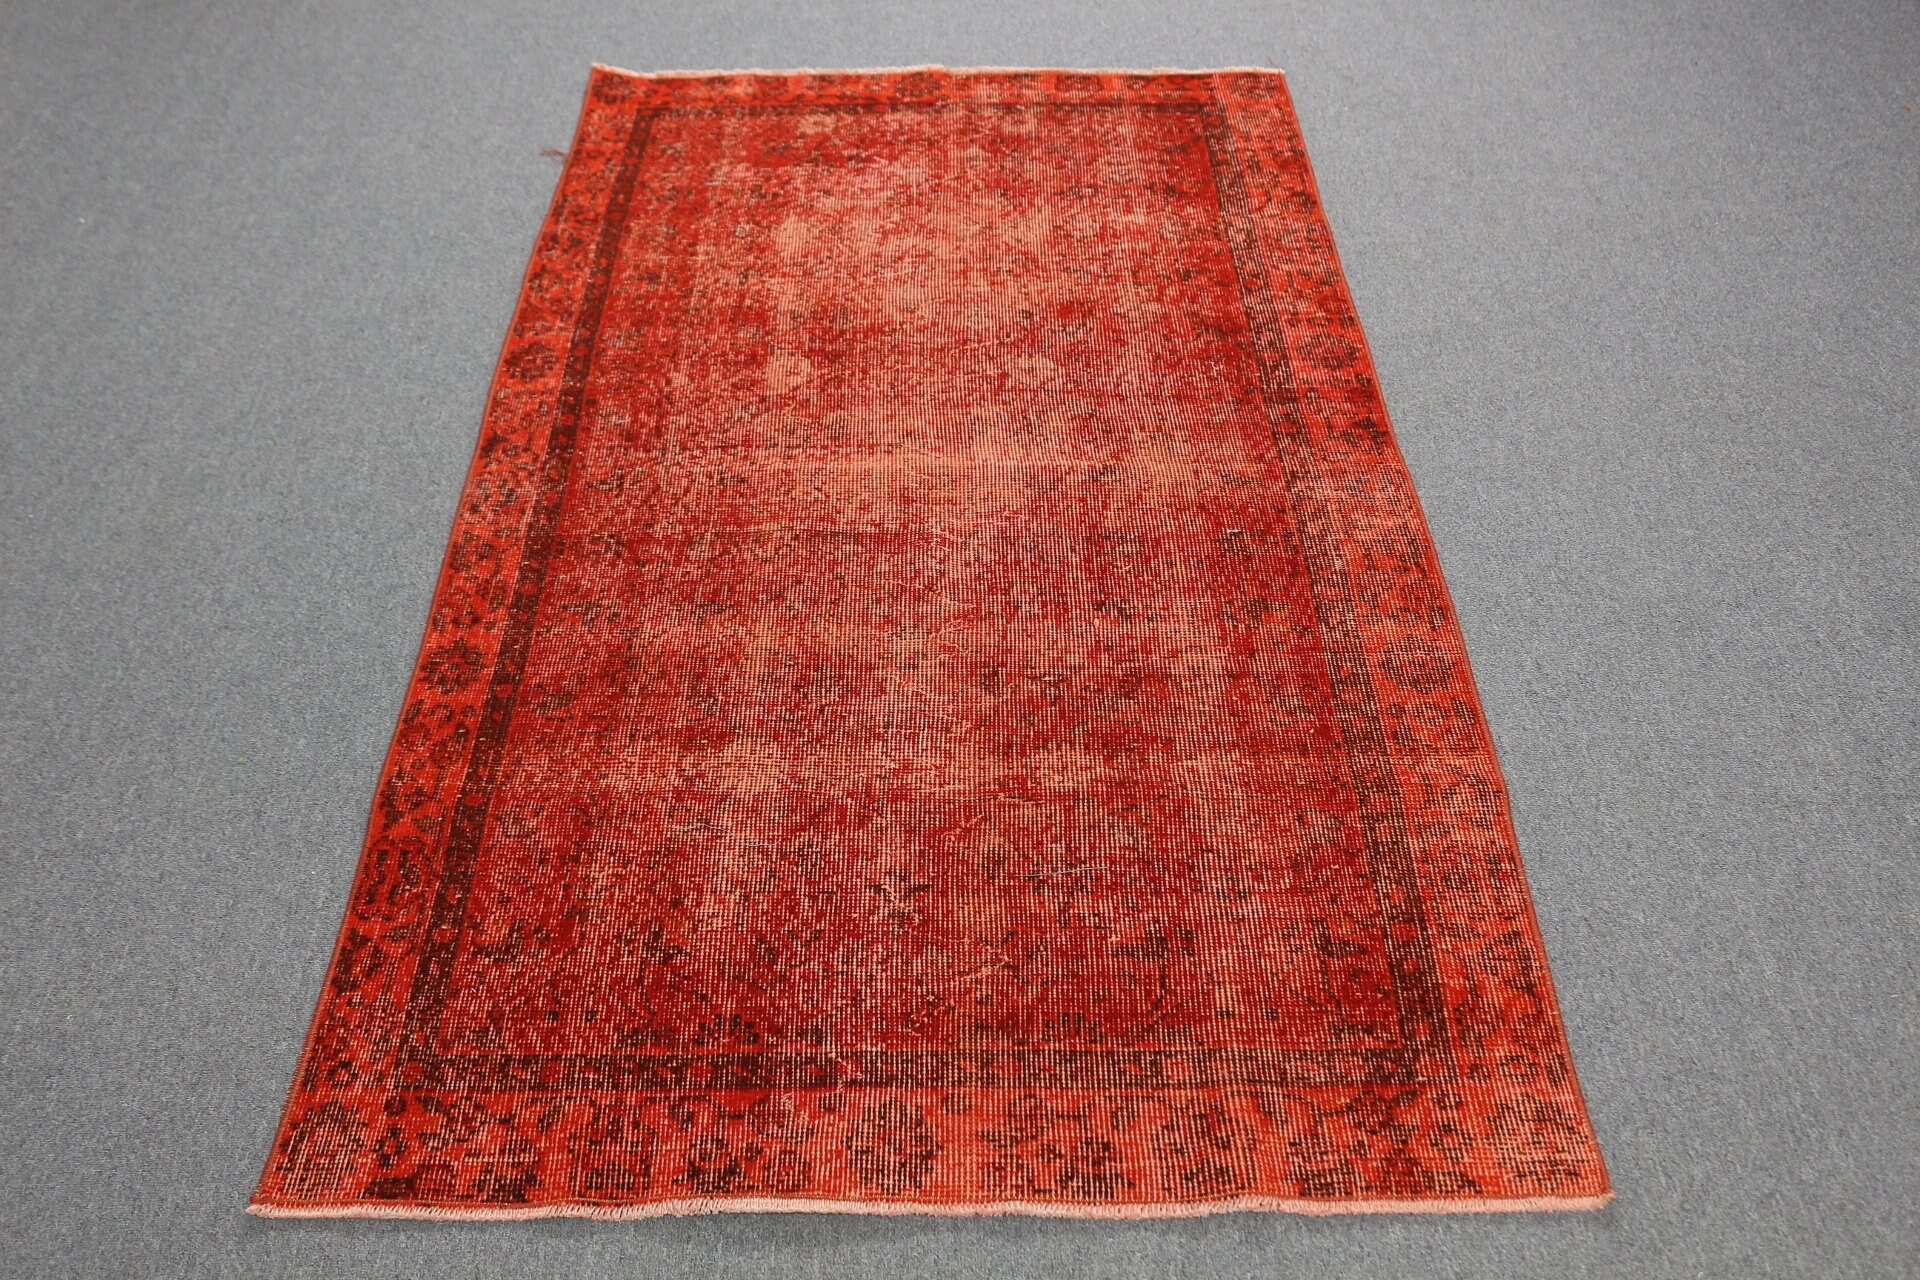 Wool Rug, Rugs for Bedroom, Turkish Rugs, 3.5x6.3 ft Accent Rug, Vintage Rug, Red Oriental Rugs, Anatolian Rug, Bedroom Rugs, Nursery Rugs